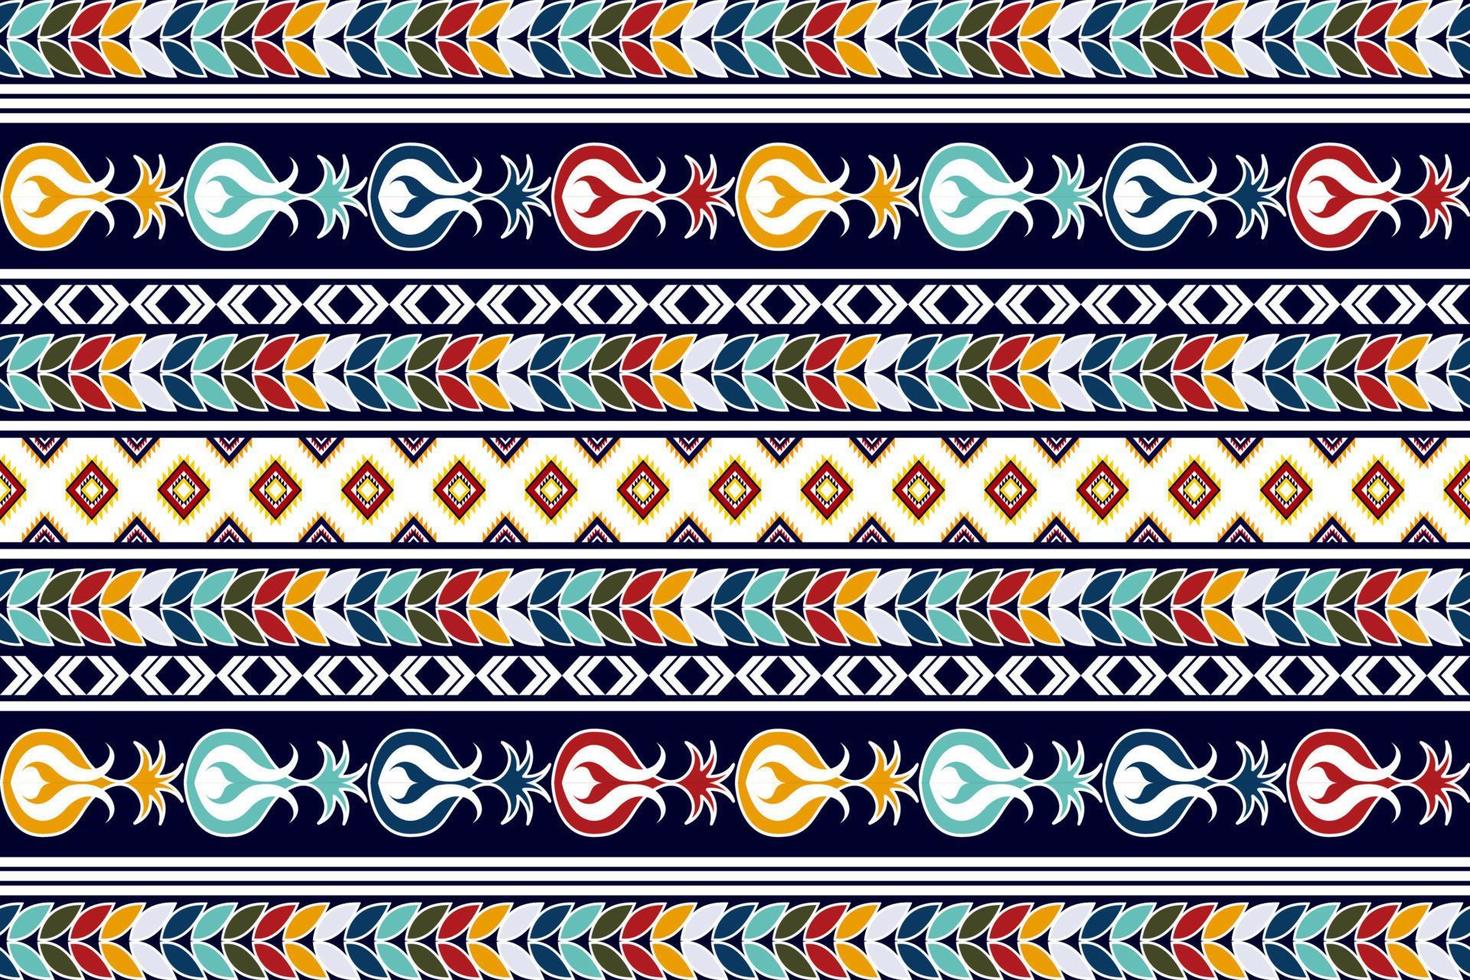 conception de motif textile ethnique sans couture ikat. tapis en tissu aztèque ornements de mandala décorations textiles papier peint. fond de vecteur de broderie traditionnelle de dinde indigène boho tribal.